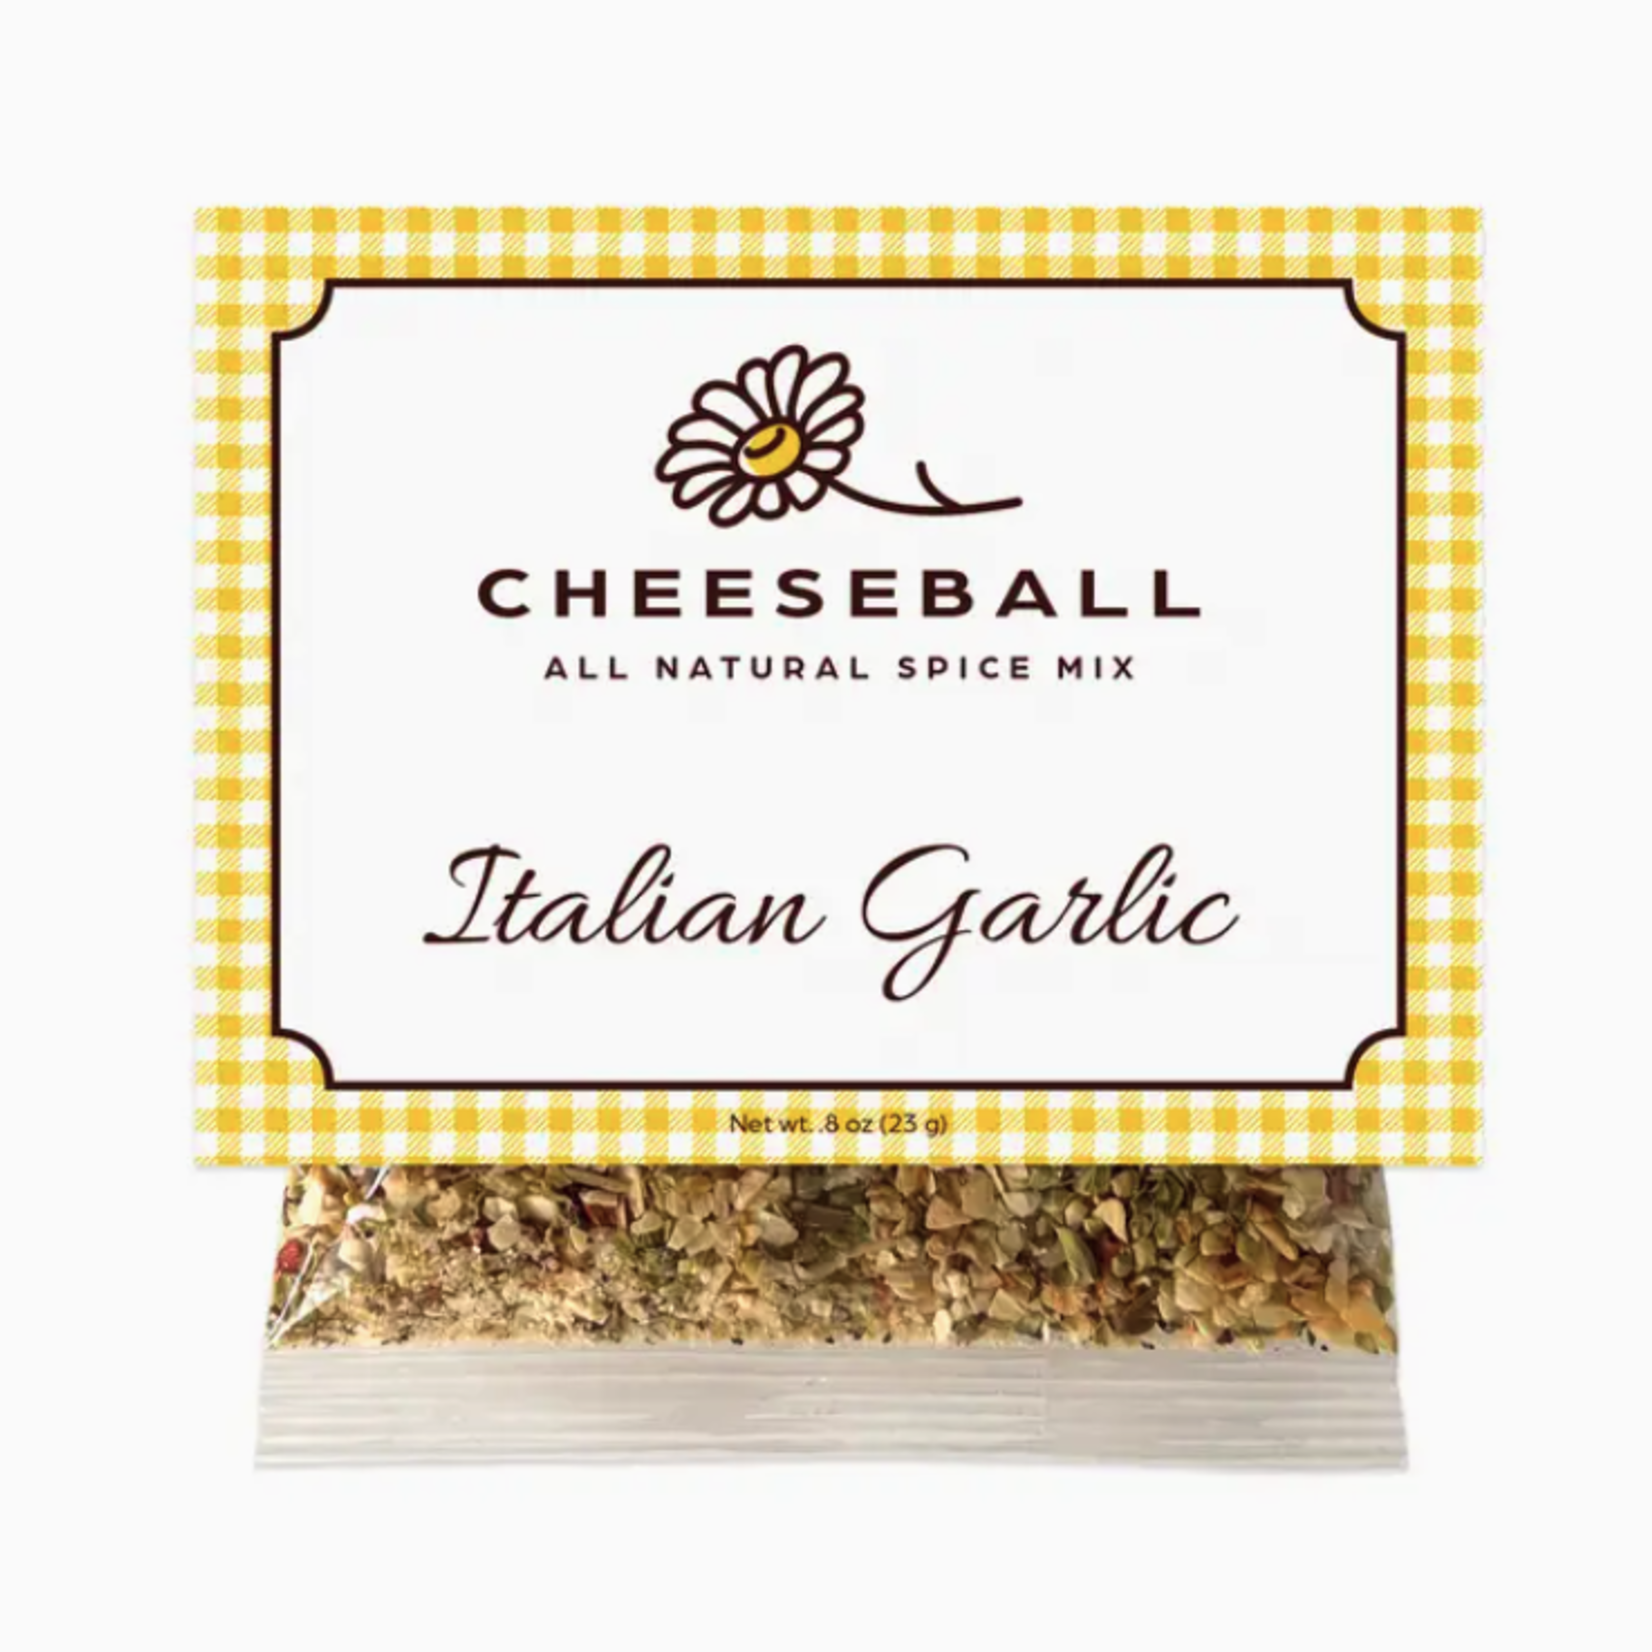 Salt Sisters Italian Garlic Cheeseball